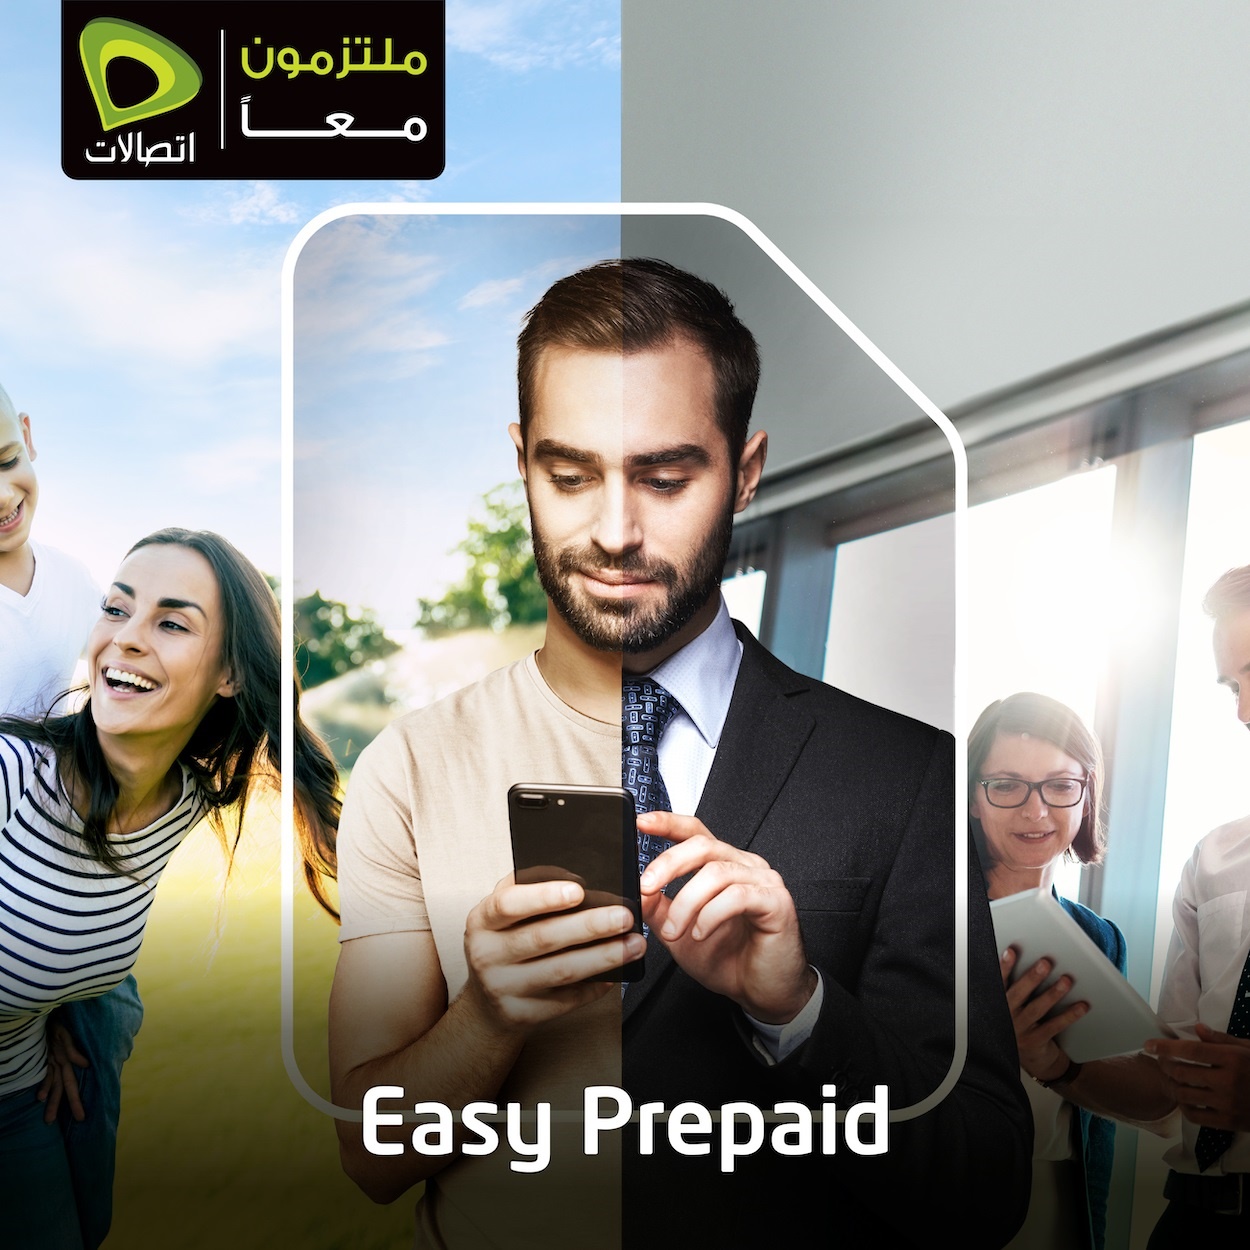 شركة اتصالات تطلق خدمة جديدة تدعى Easy Prepaid